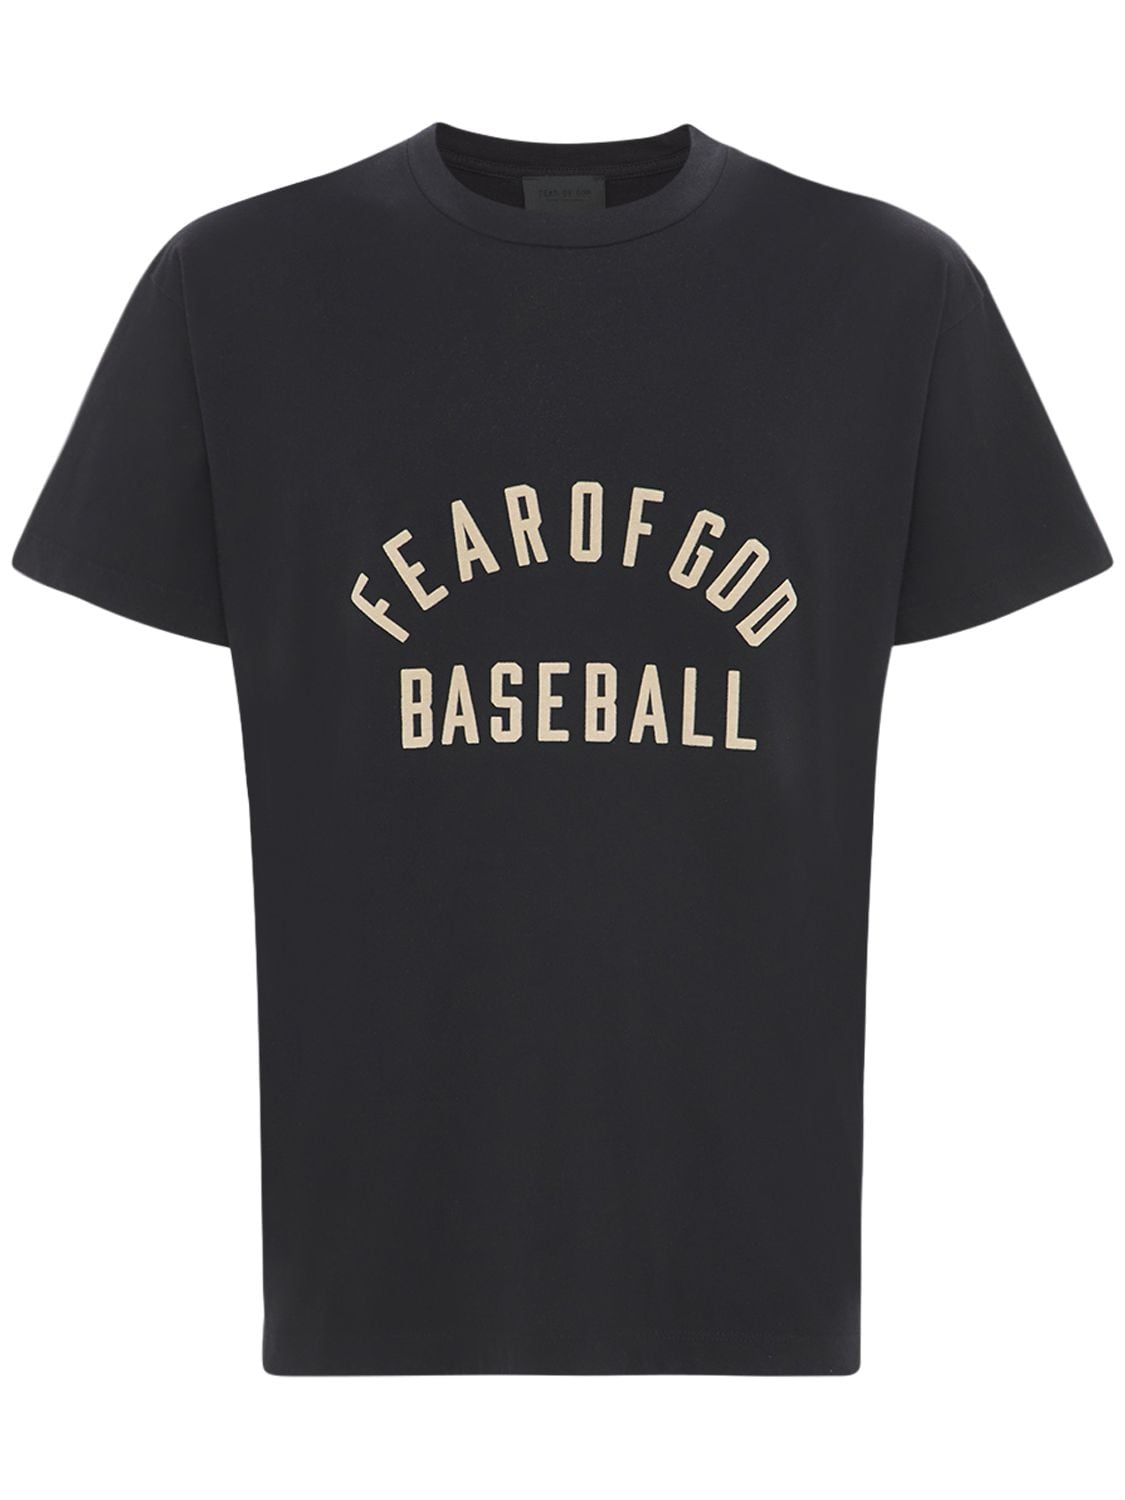 FEAR OF GOD “BASEBALL”棉质平纹针织T恤,73IWCC018-MDAX0